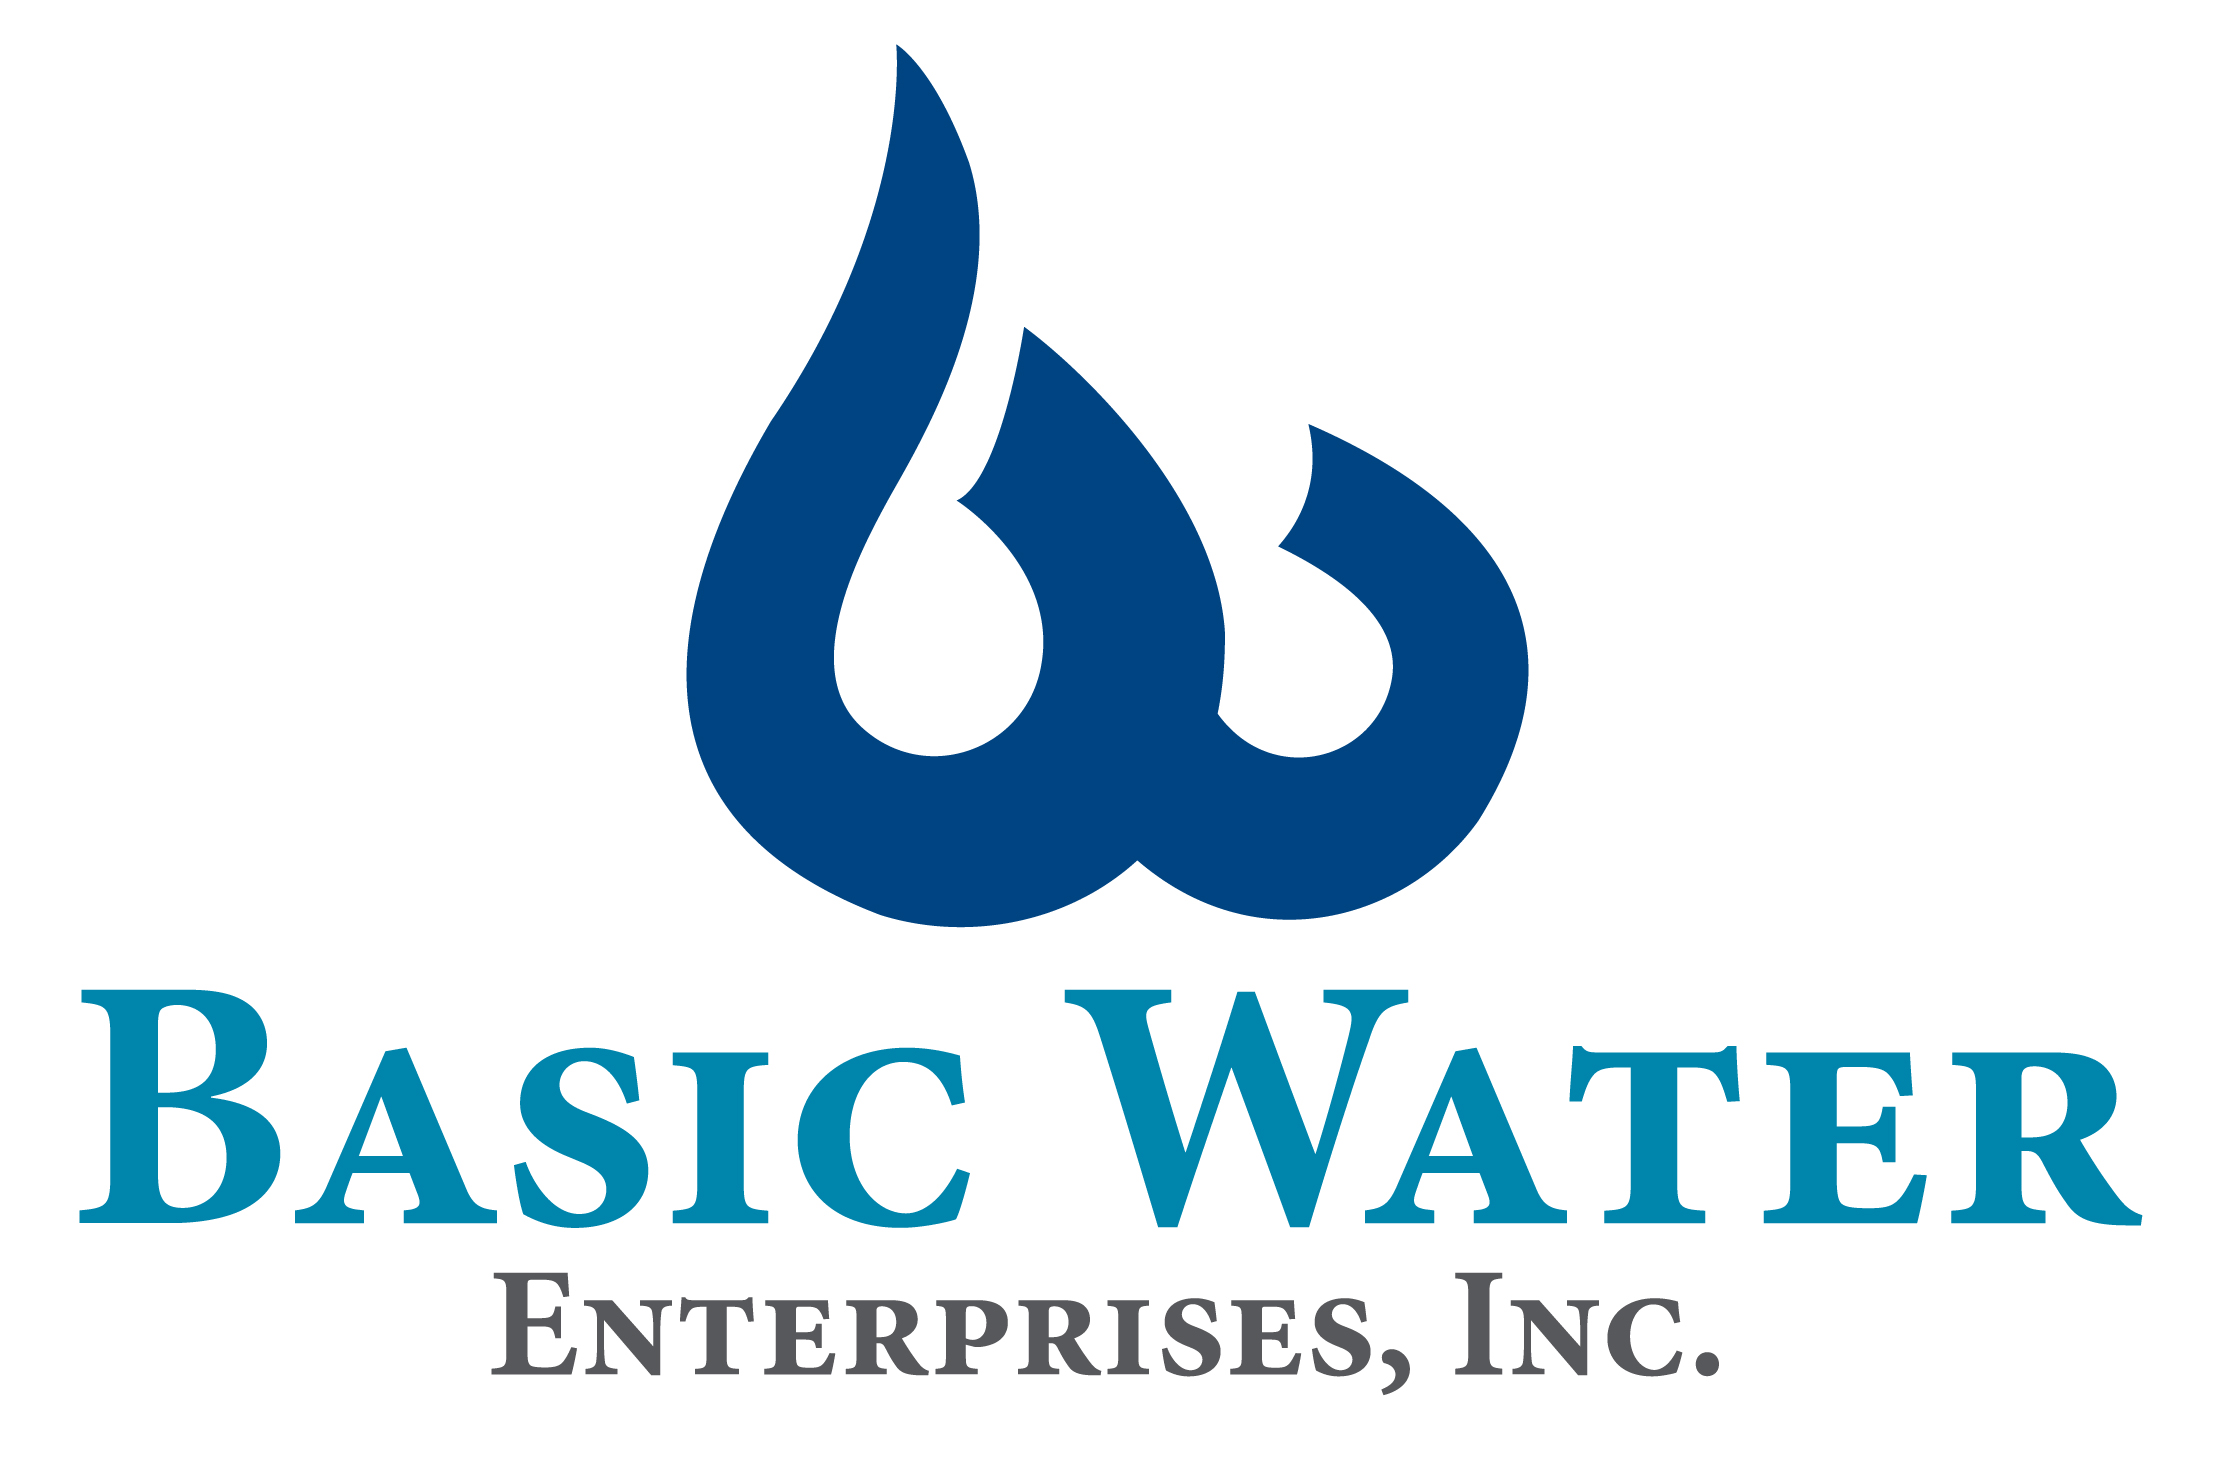 BASIC WATER ENTERPRISES, INC.